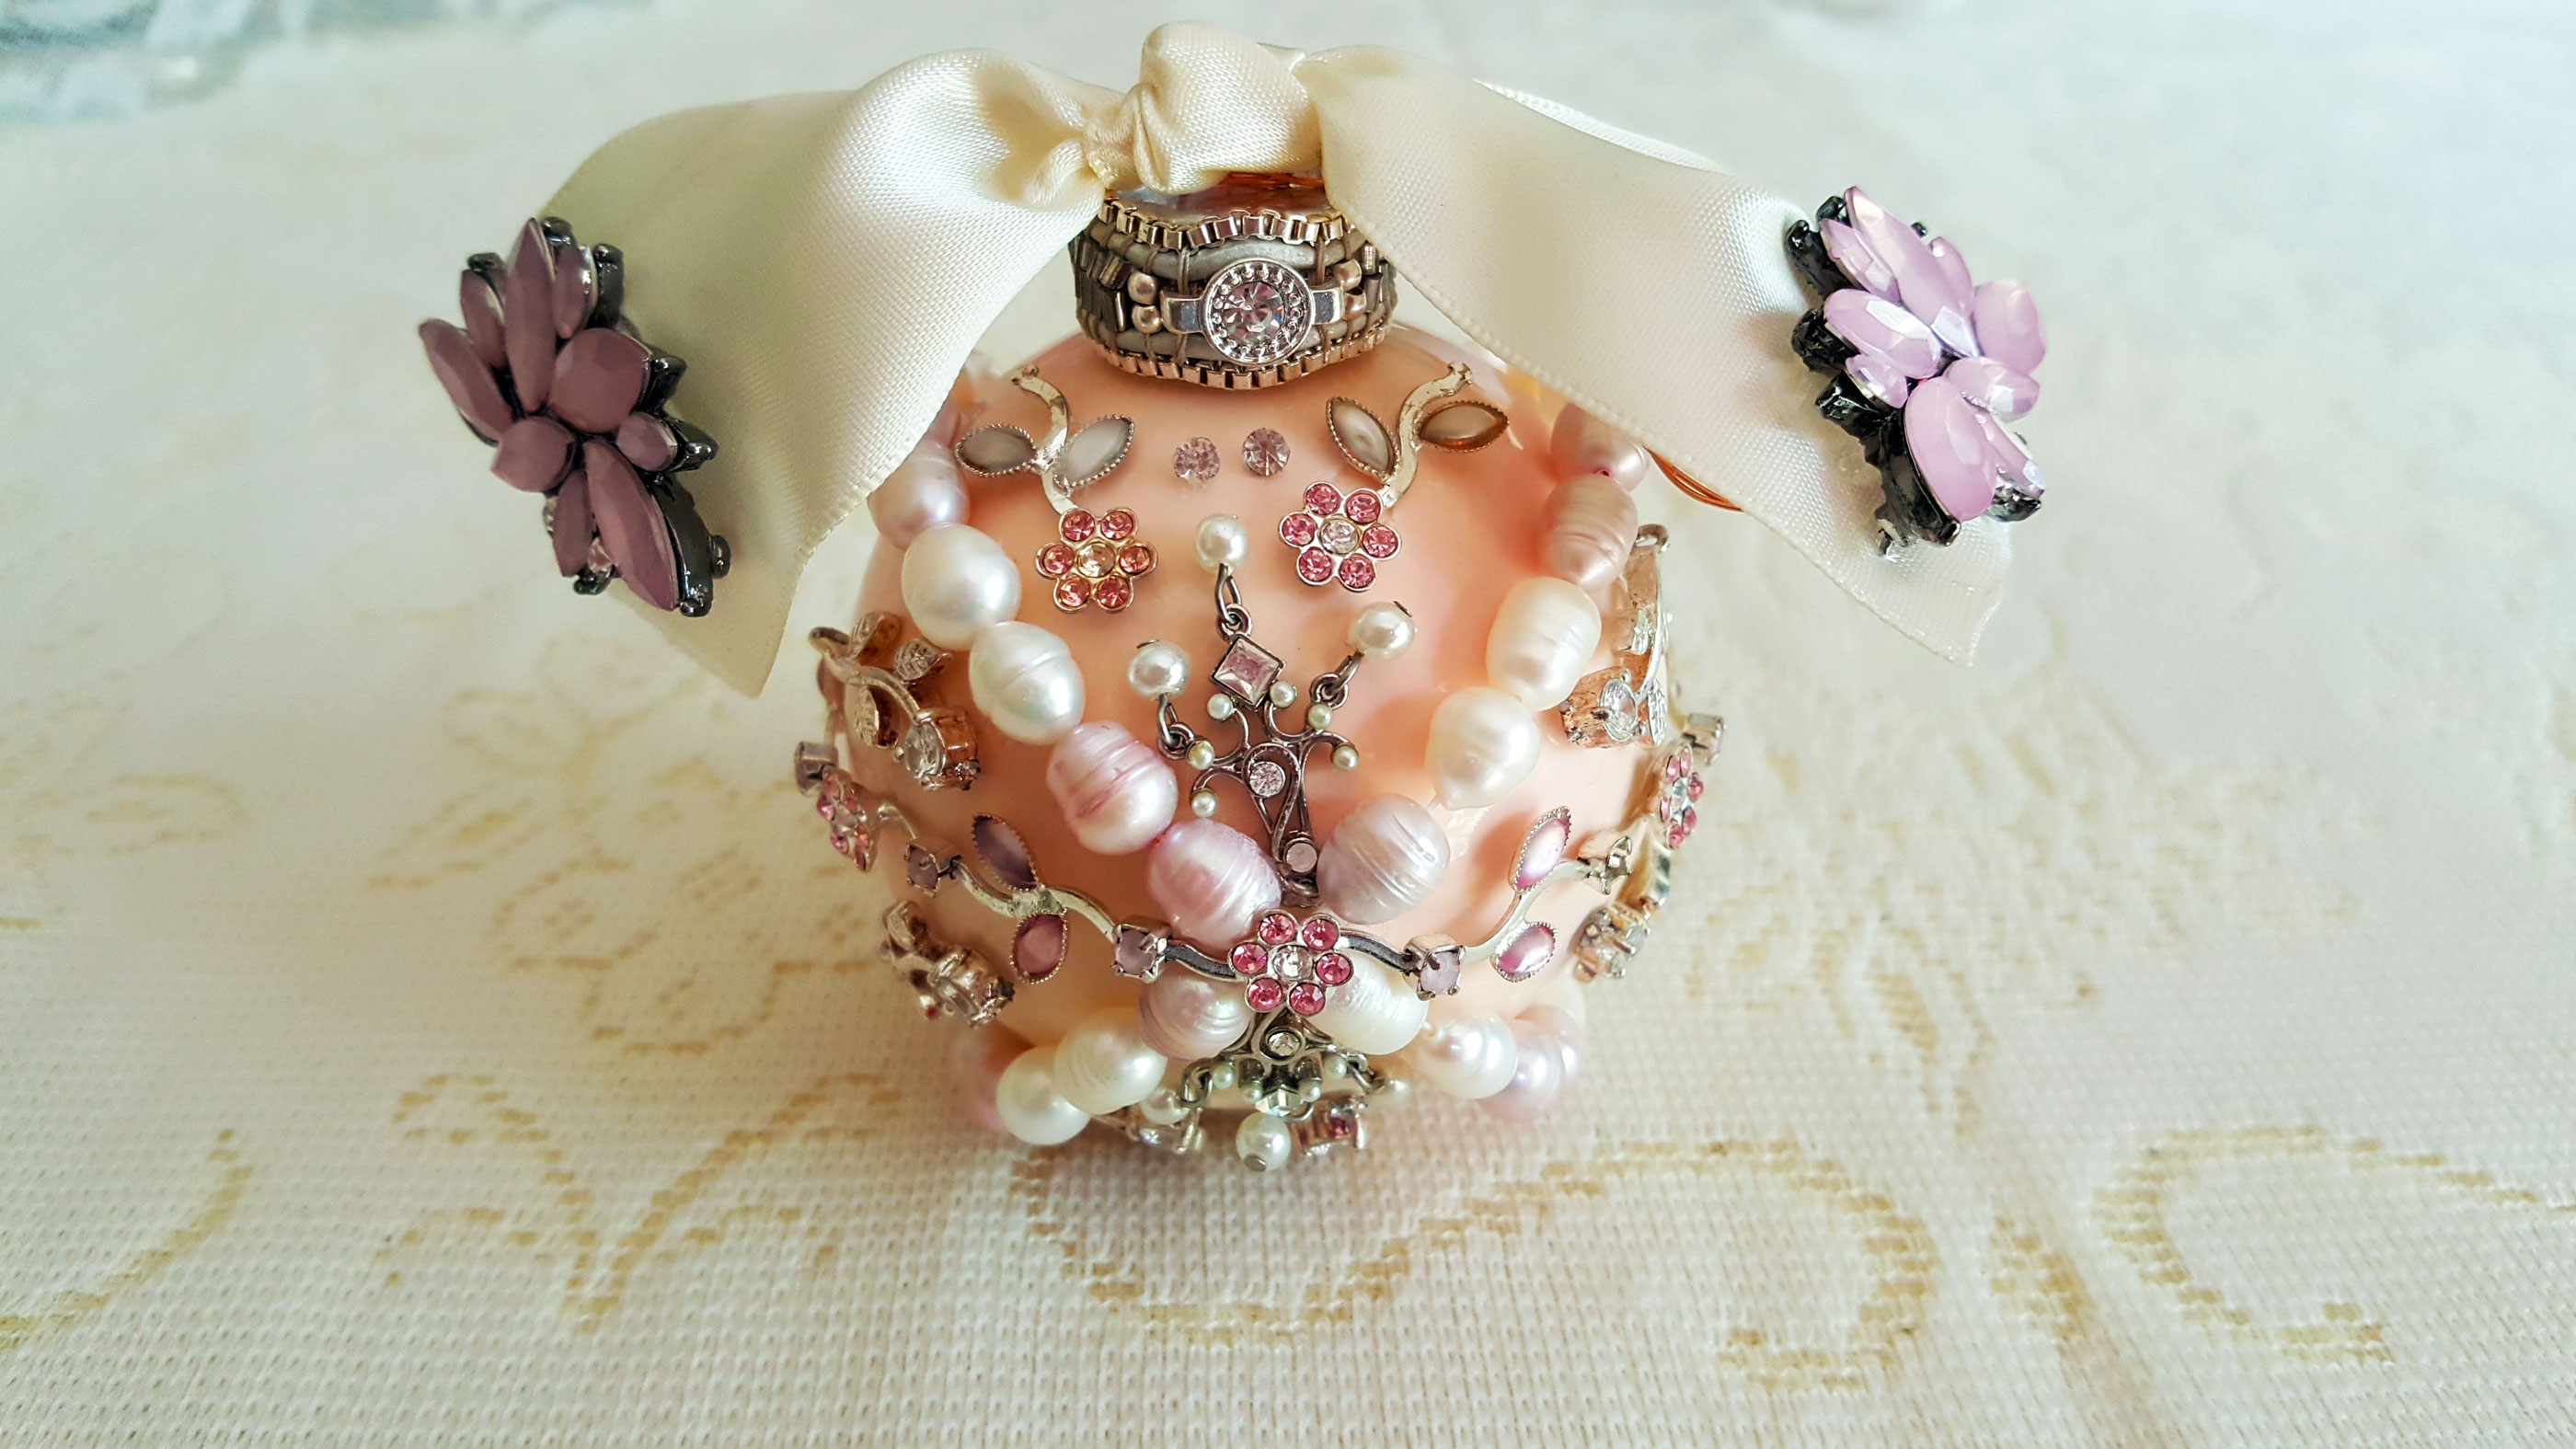 A DIY Vintage Jewelry Wedding Ornament | OrnamentShop.com